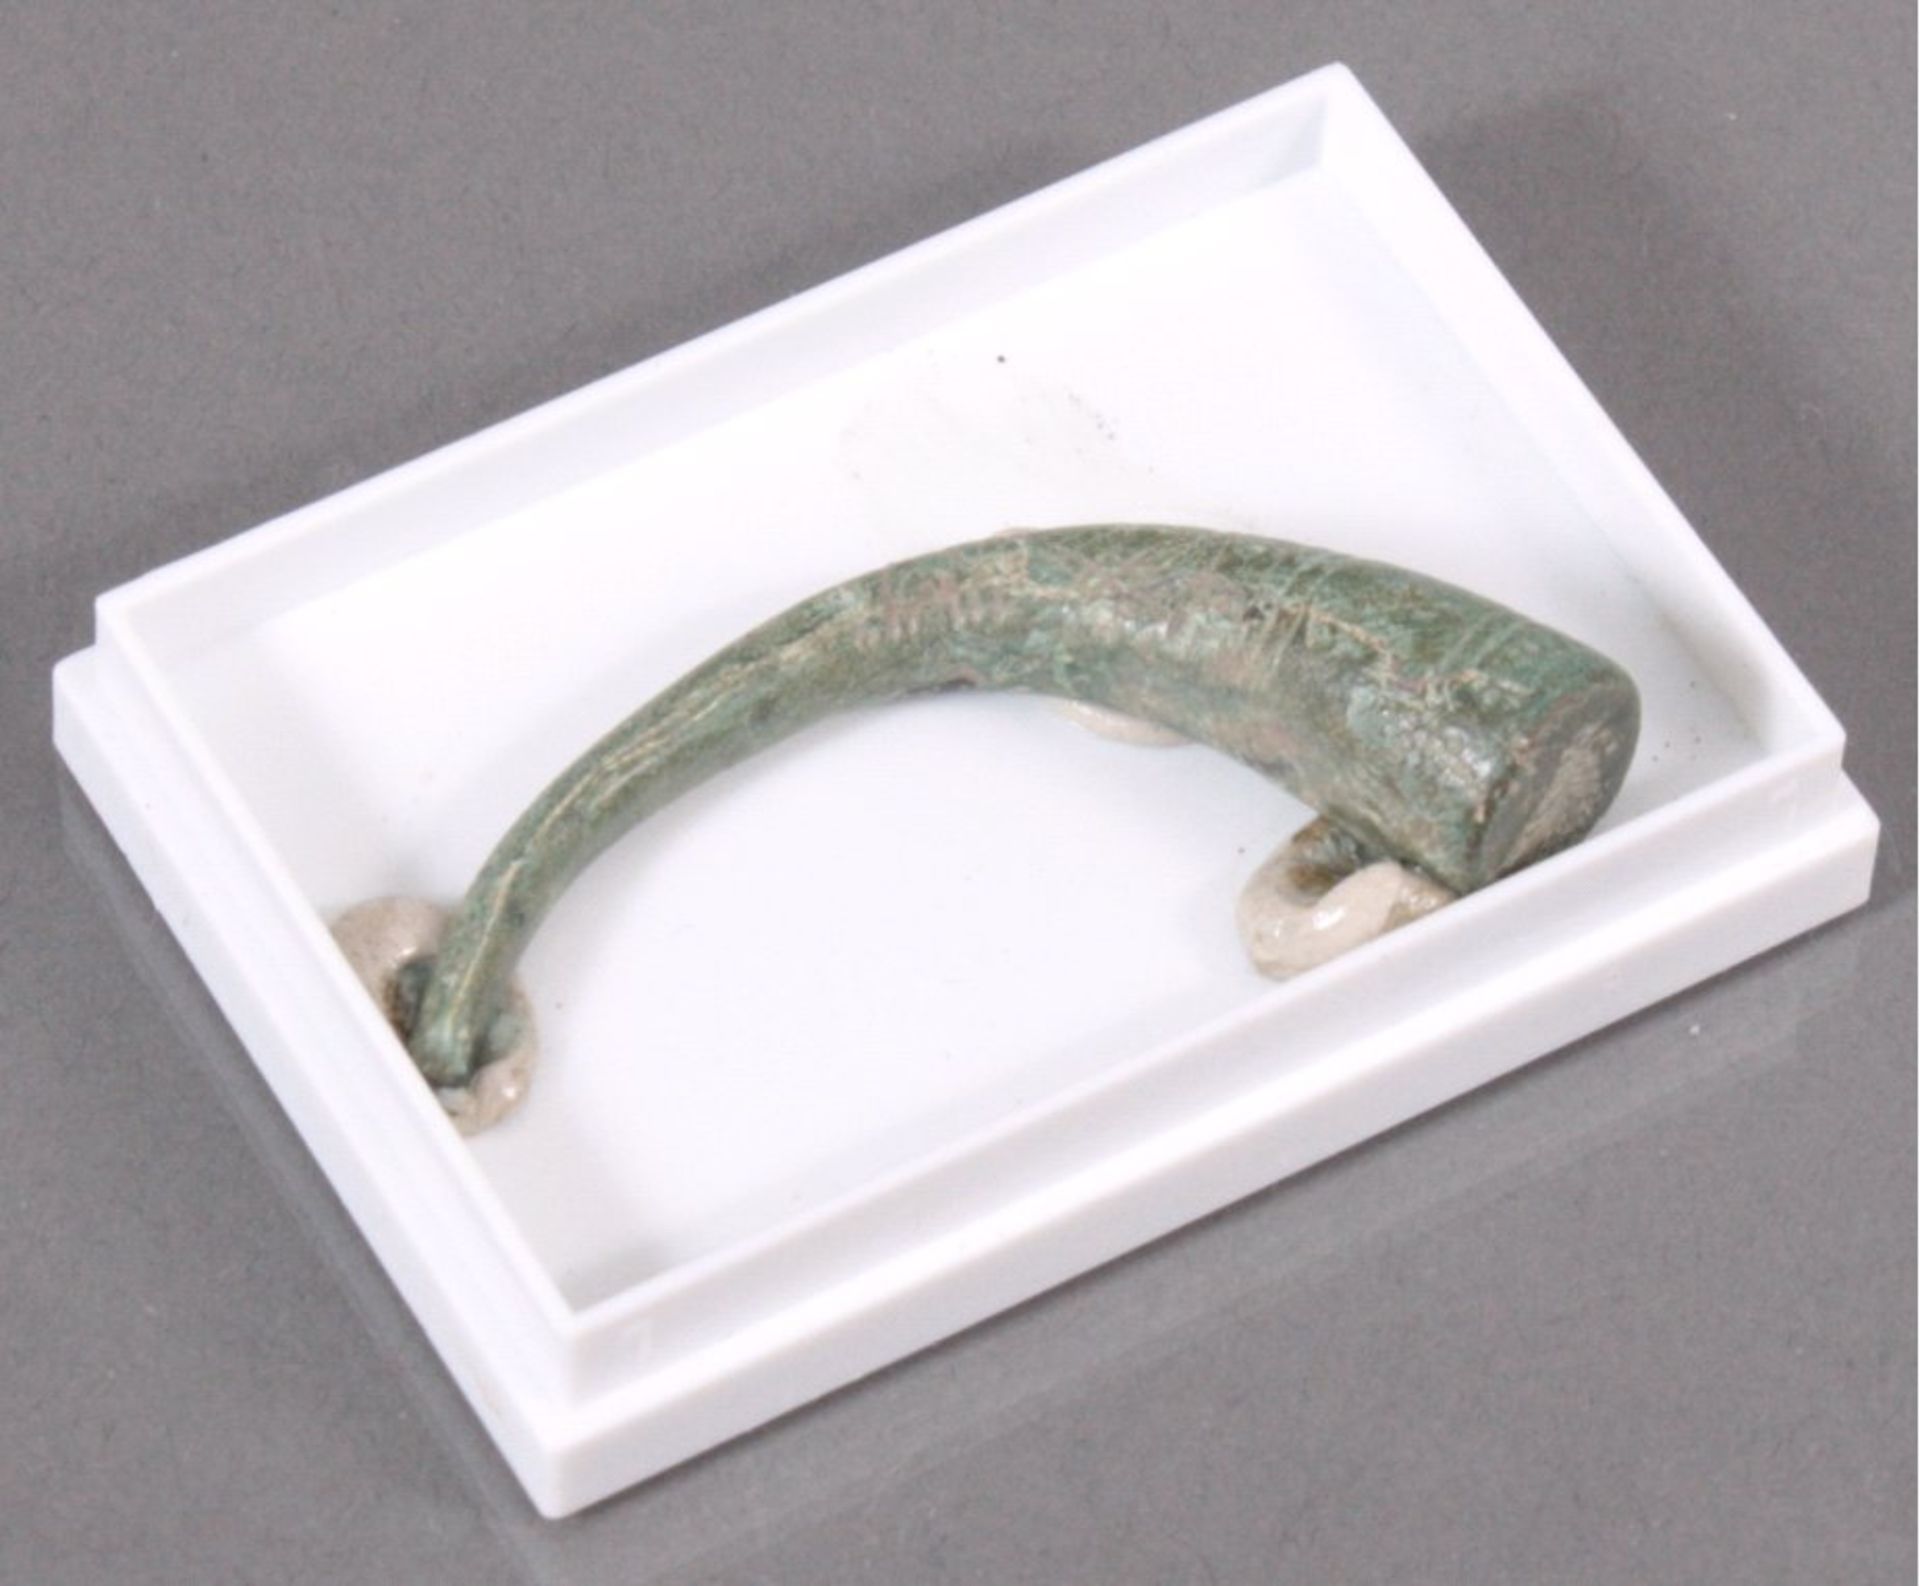 Roemischer Bronyearmreif, halber verzierter.ca. L-5 cm

Dieses Los wird in einer online-Auktion ohne